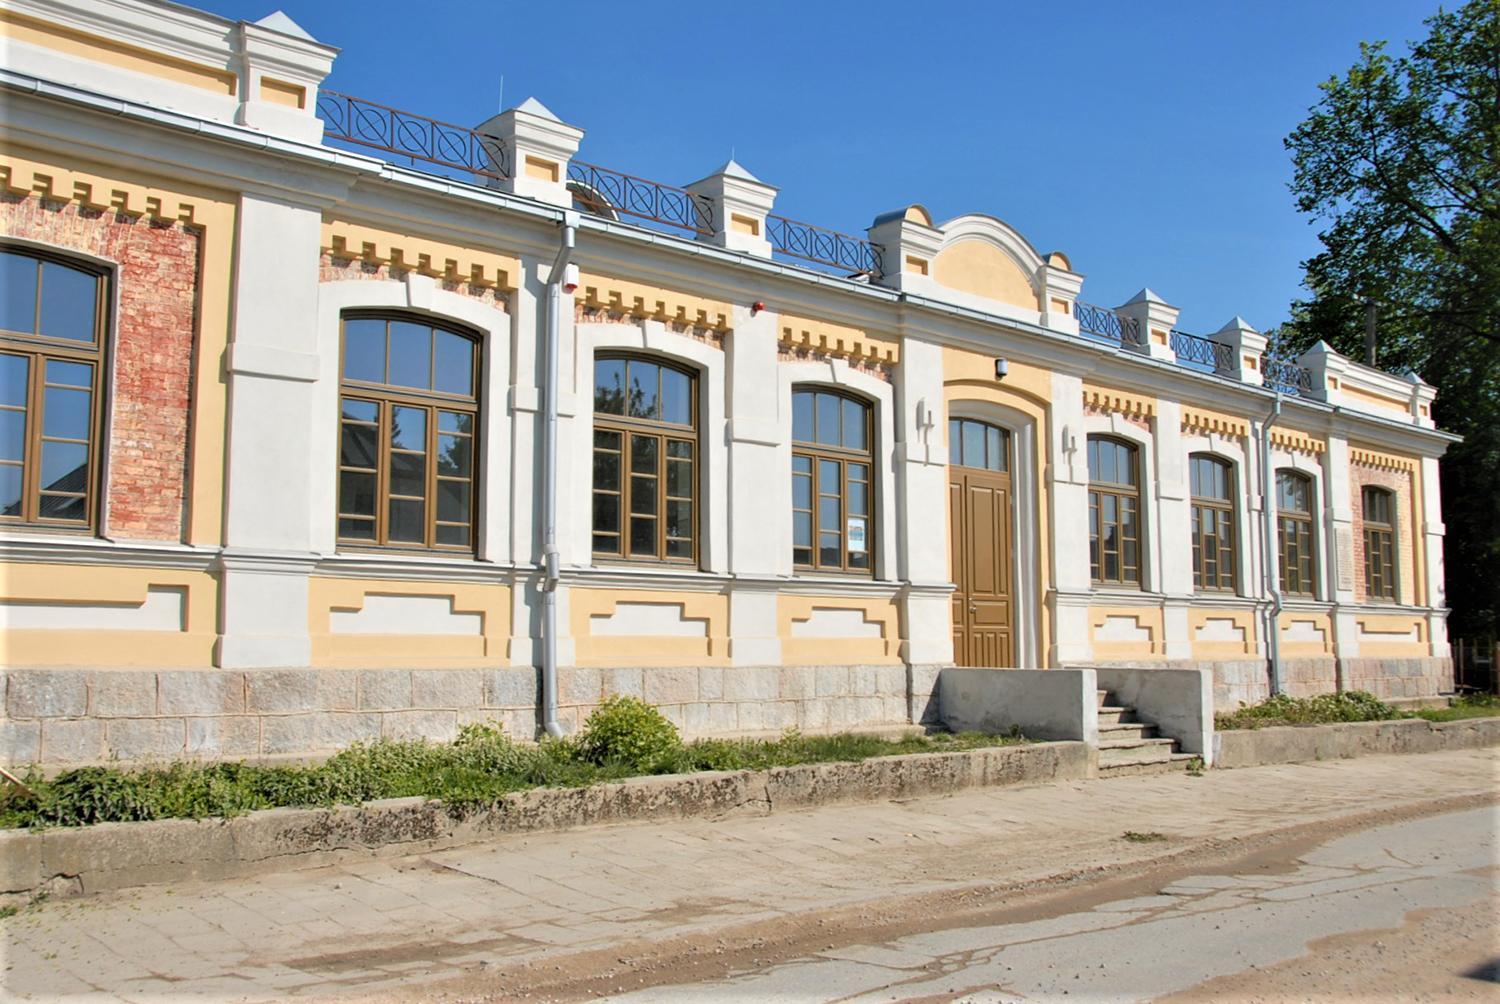 Per šventę veiklas pristatys Tolerancijos centras / Vasario 16-osios gatvėje atgimęs pastatas buvo pastatytas 1898 metais. Gedimino Nemunaičio nuotr.